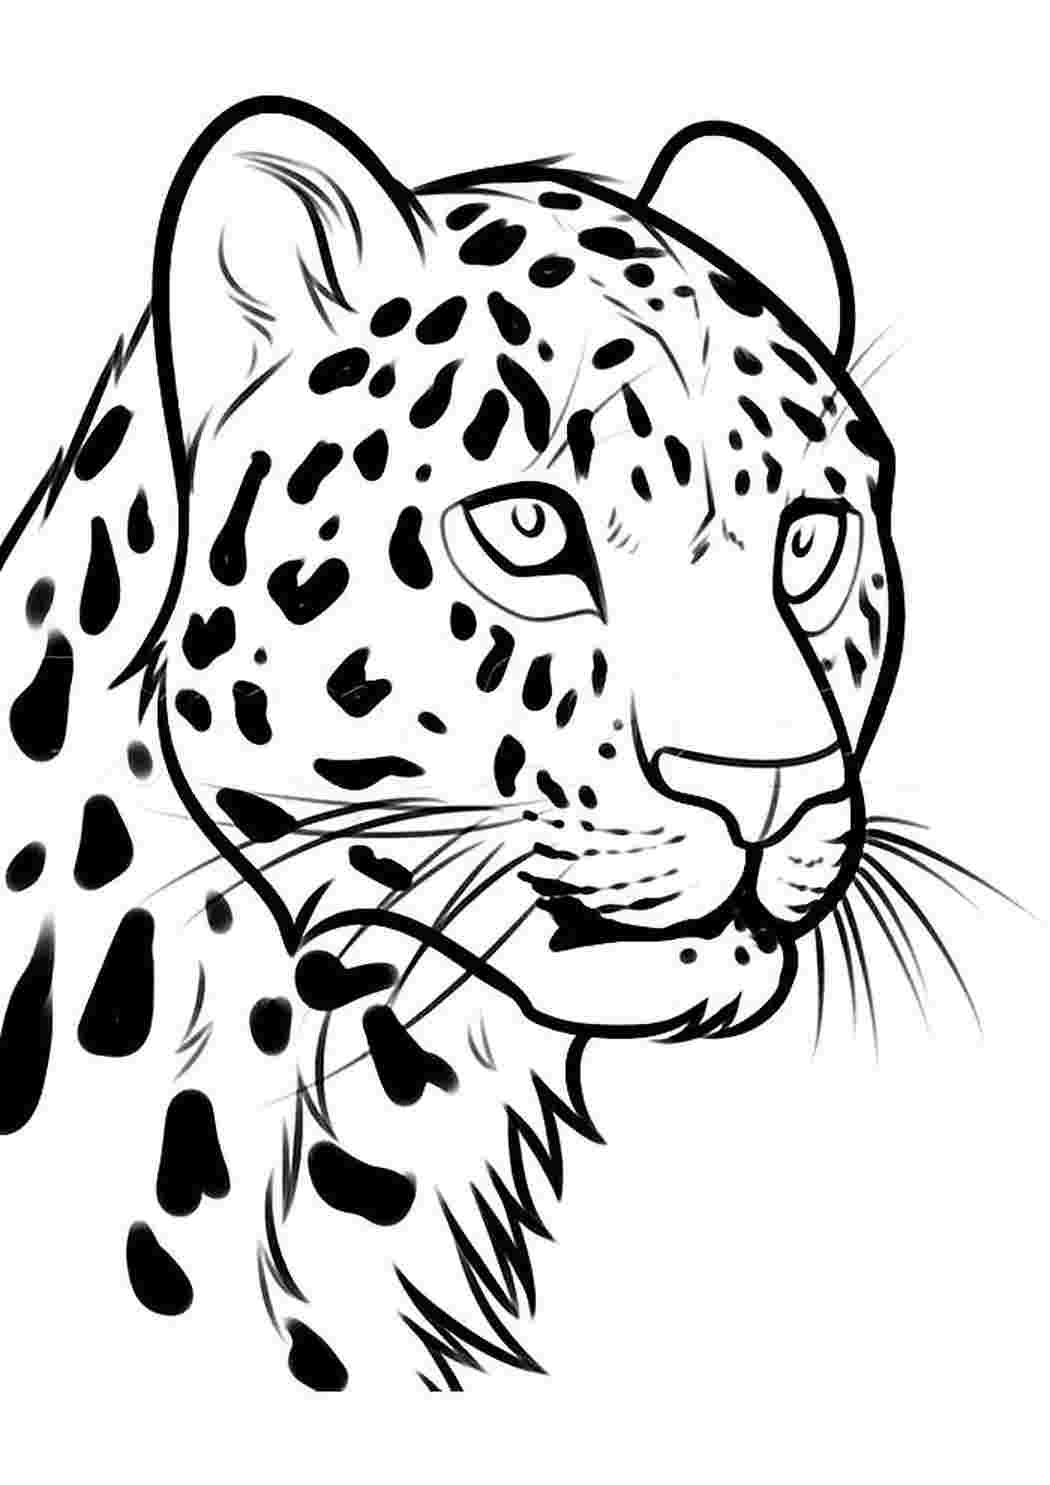 Нарисовать леопарда